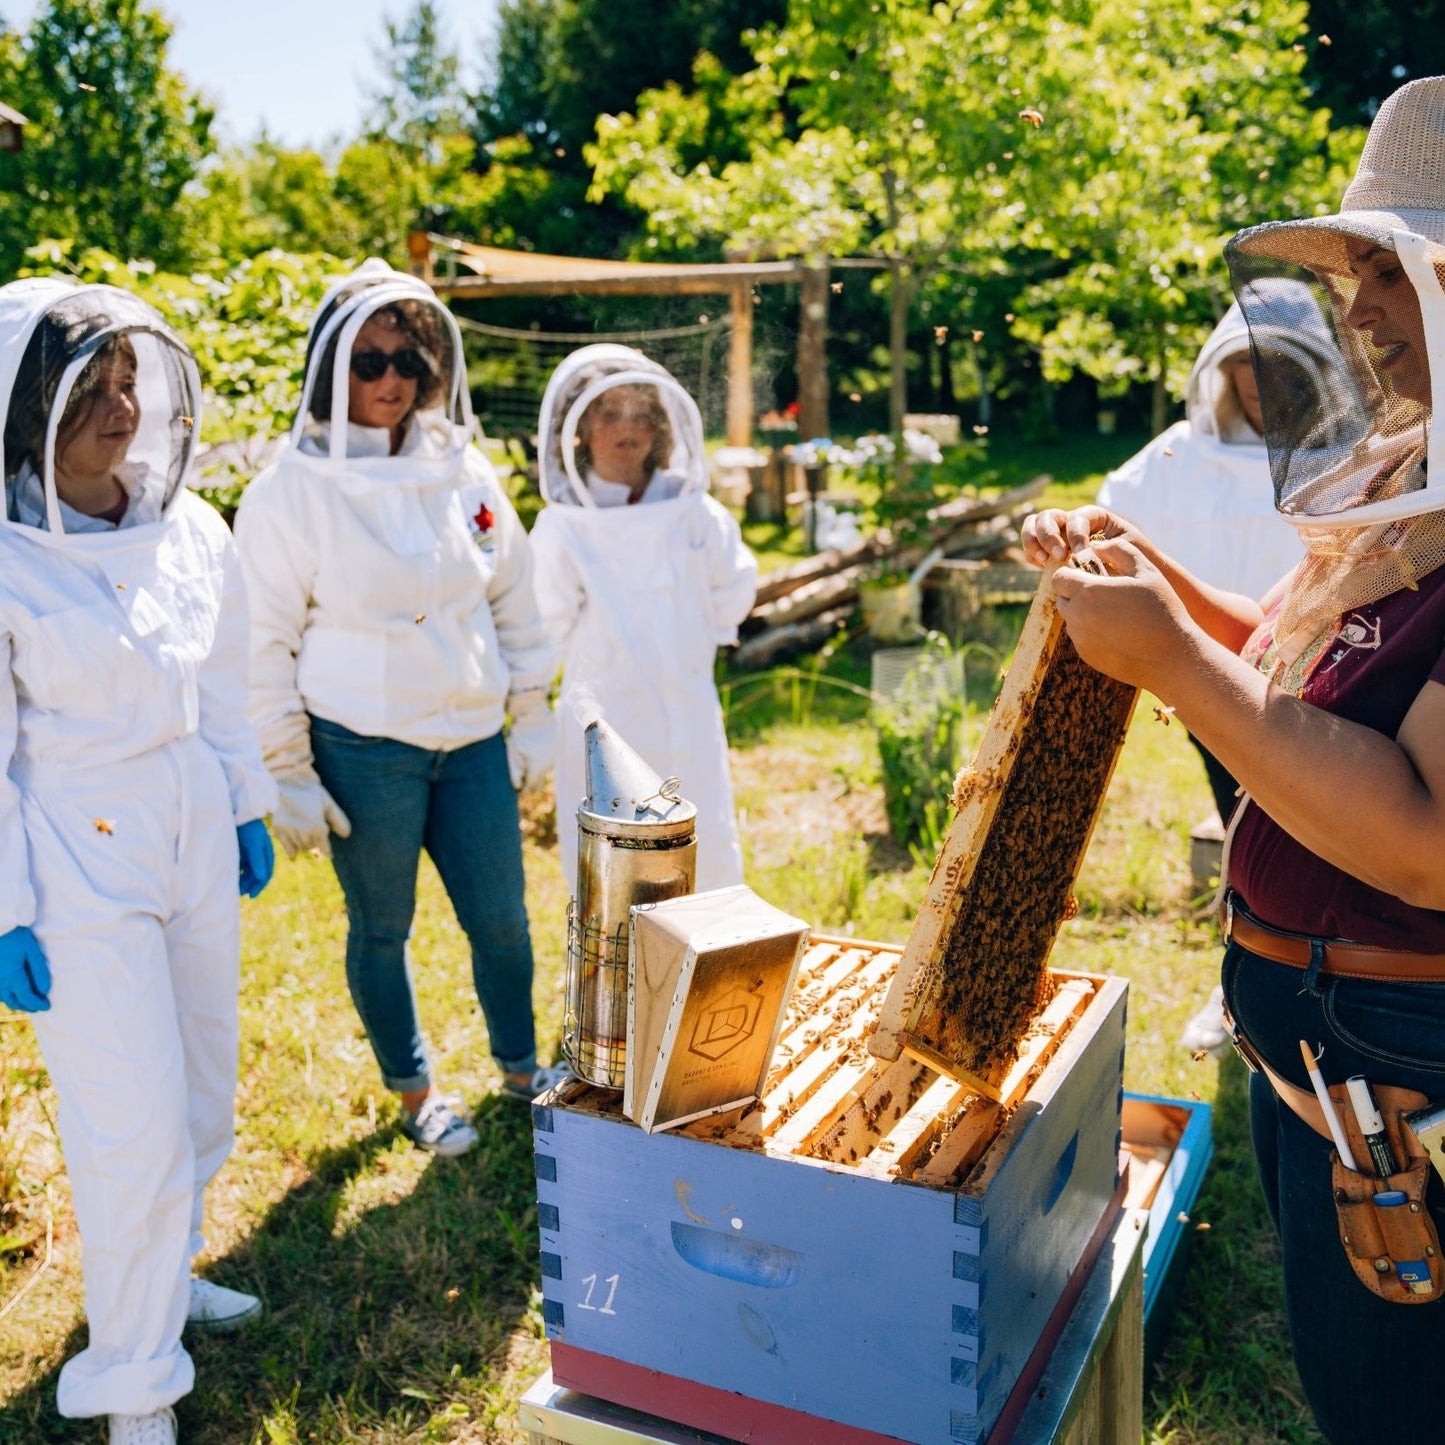 beekeeping showing people a beehive.